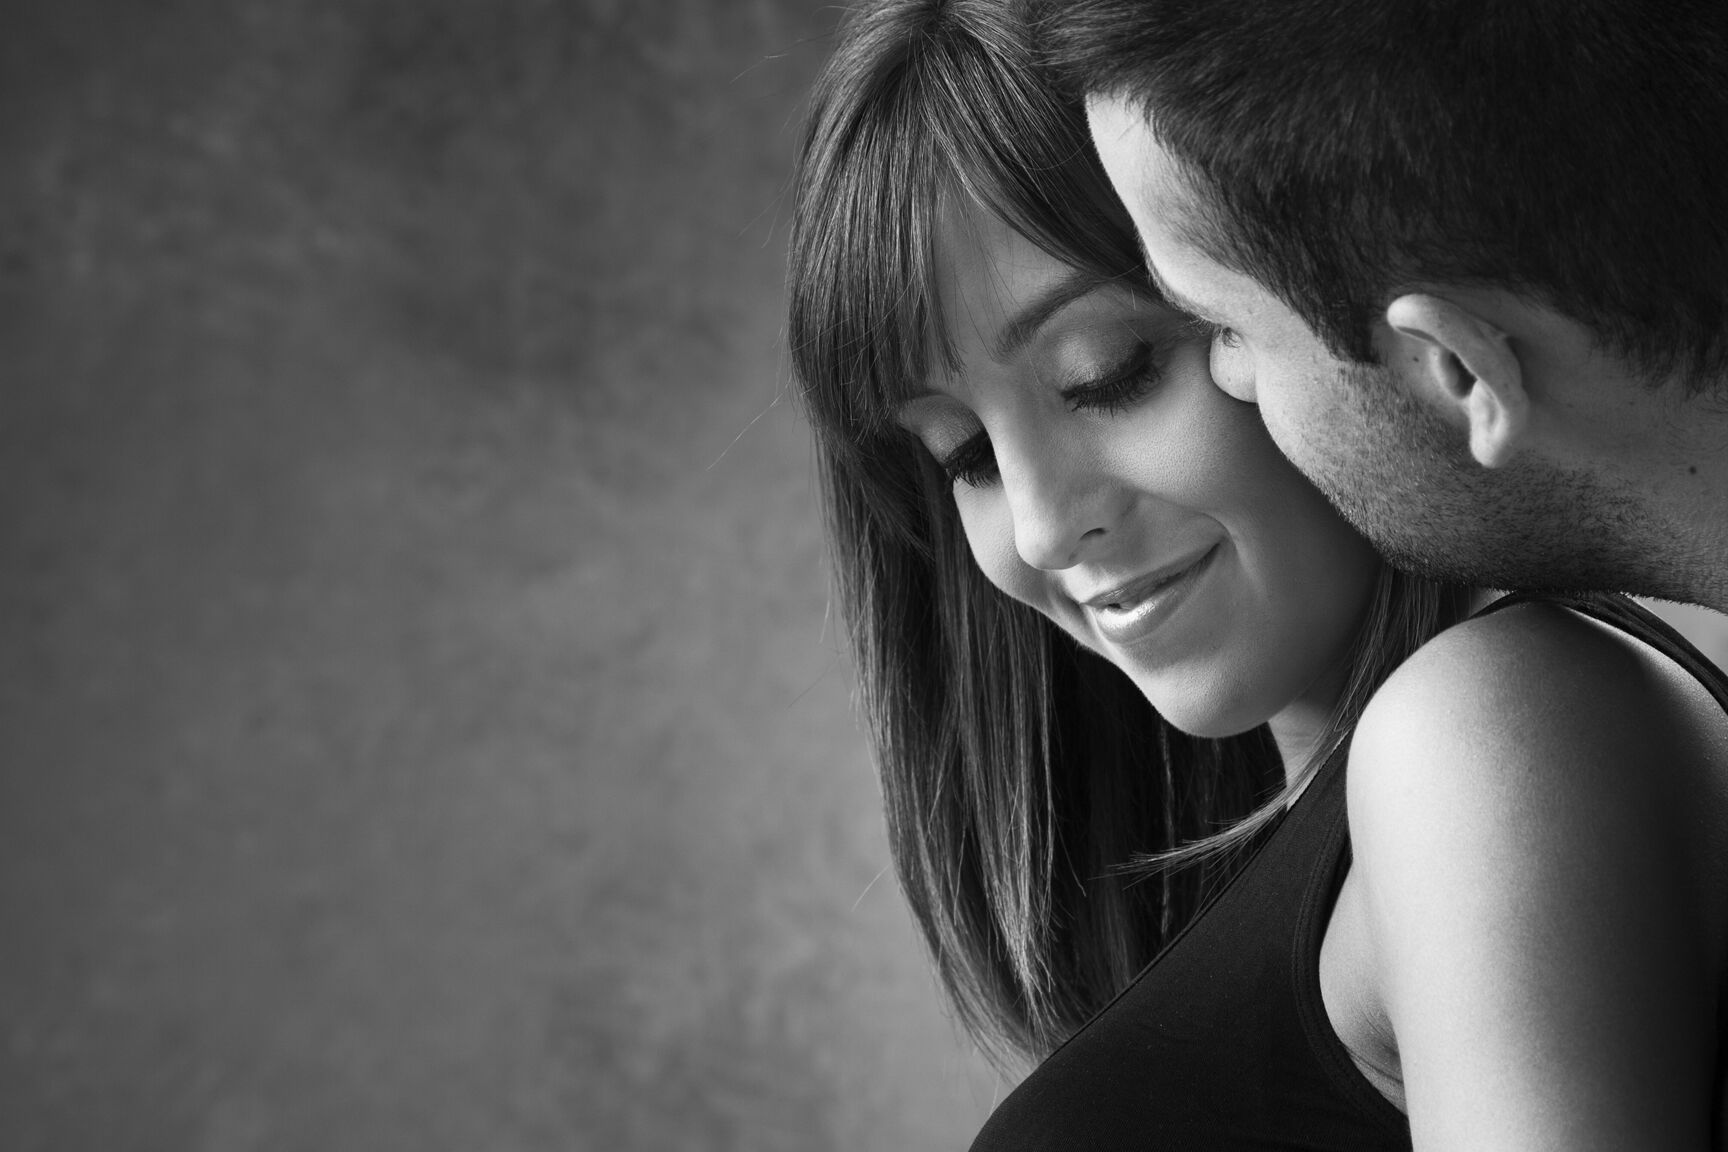 Retrato en blanco y negro de una sesión de pareja en el estudio. El futuro papá besa tiernamente a su esposa embarazada en la mejilla.